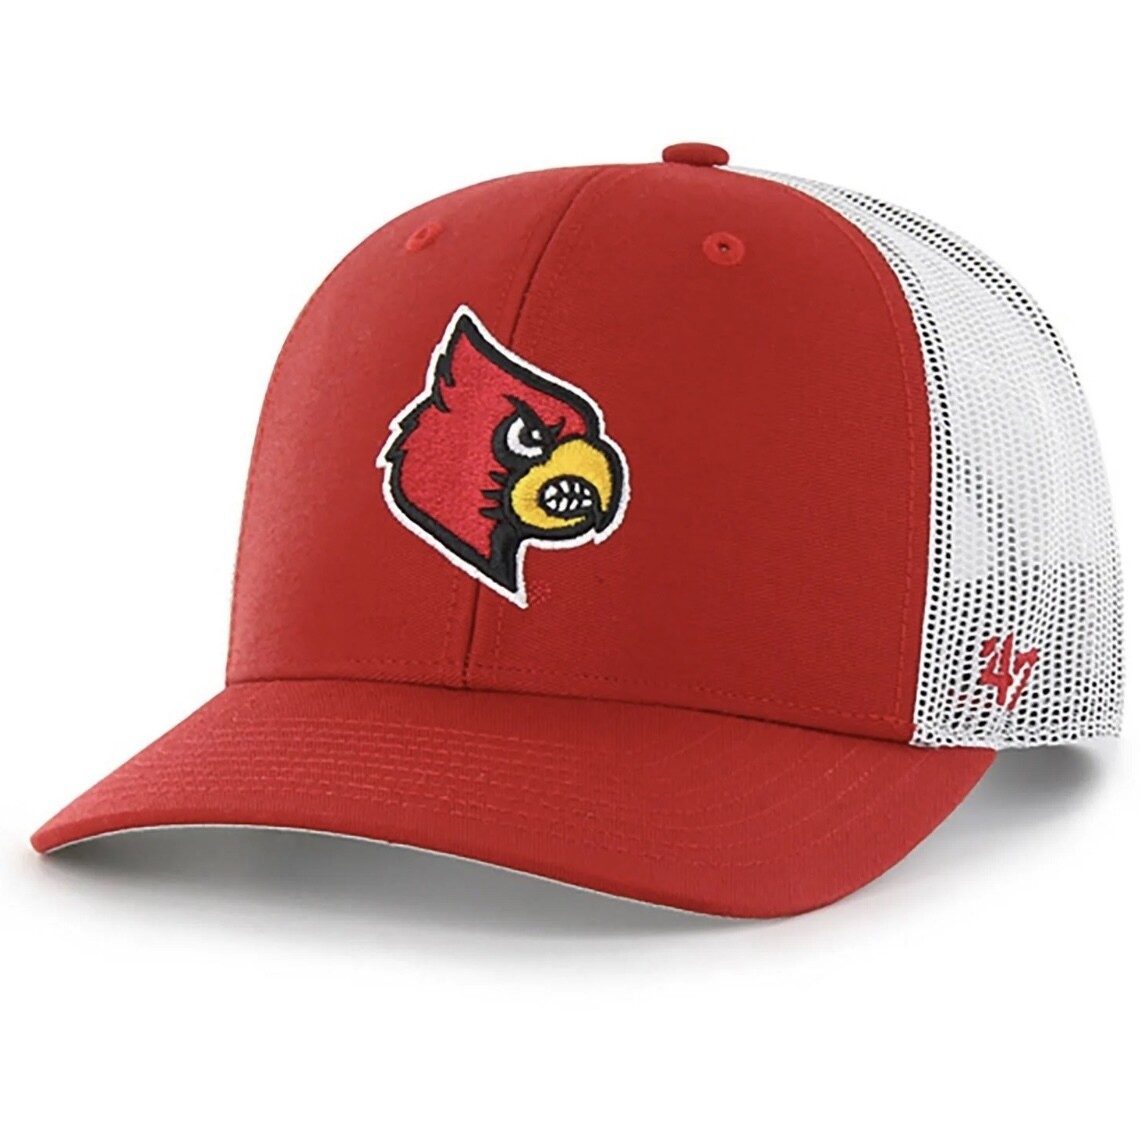 Louisville Cardinals Men's 47 Trucker Adjustable Hat